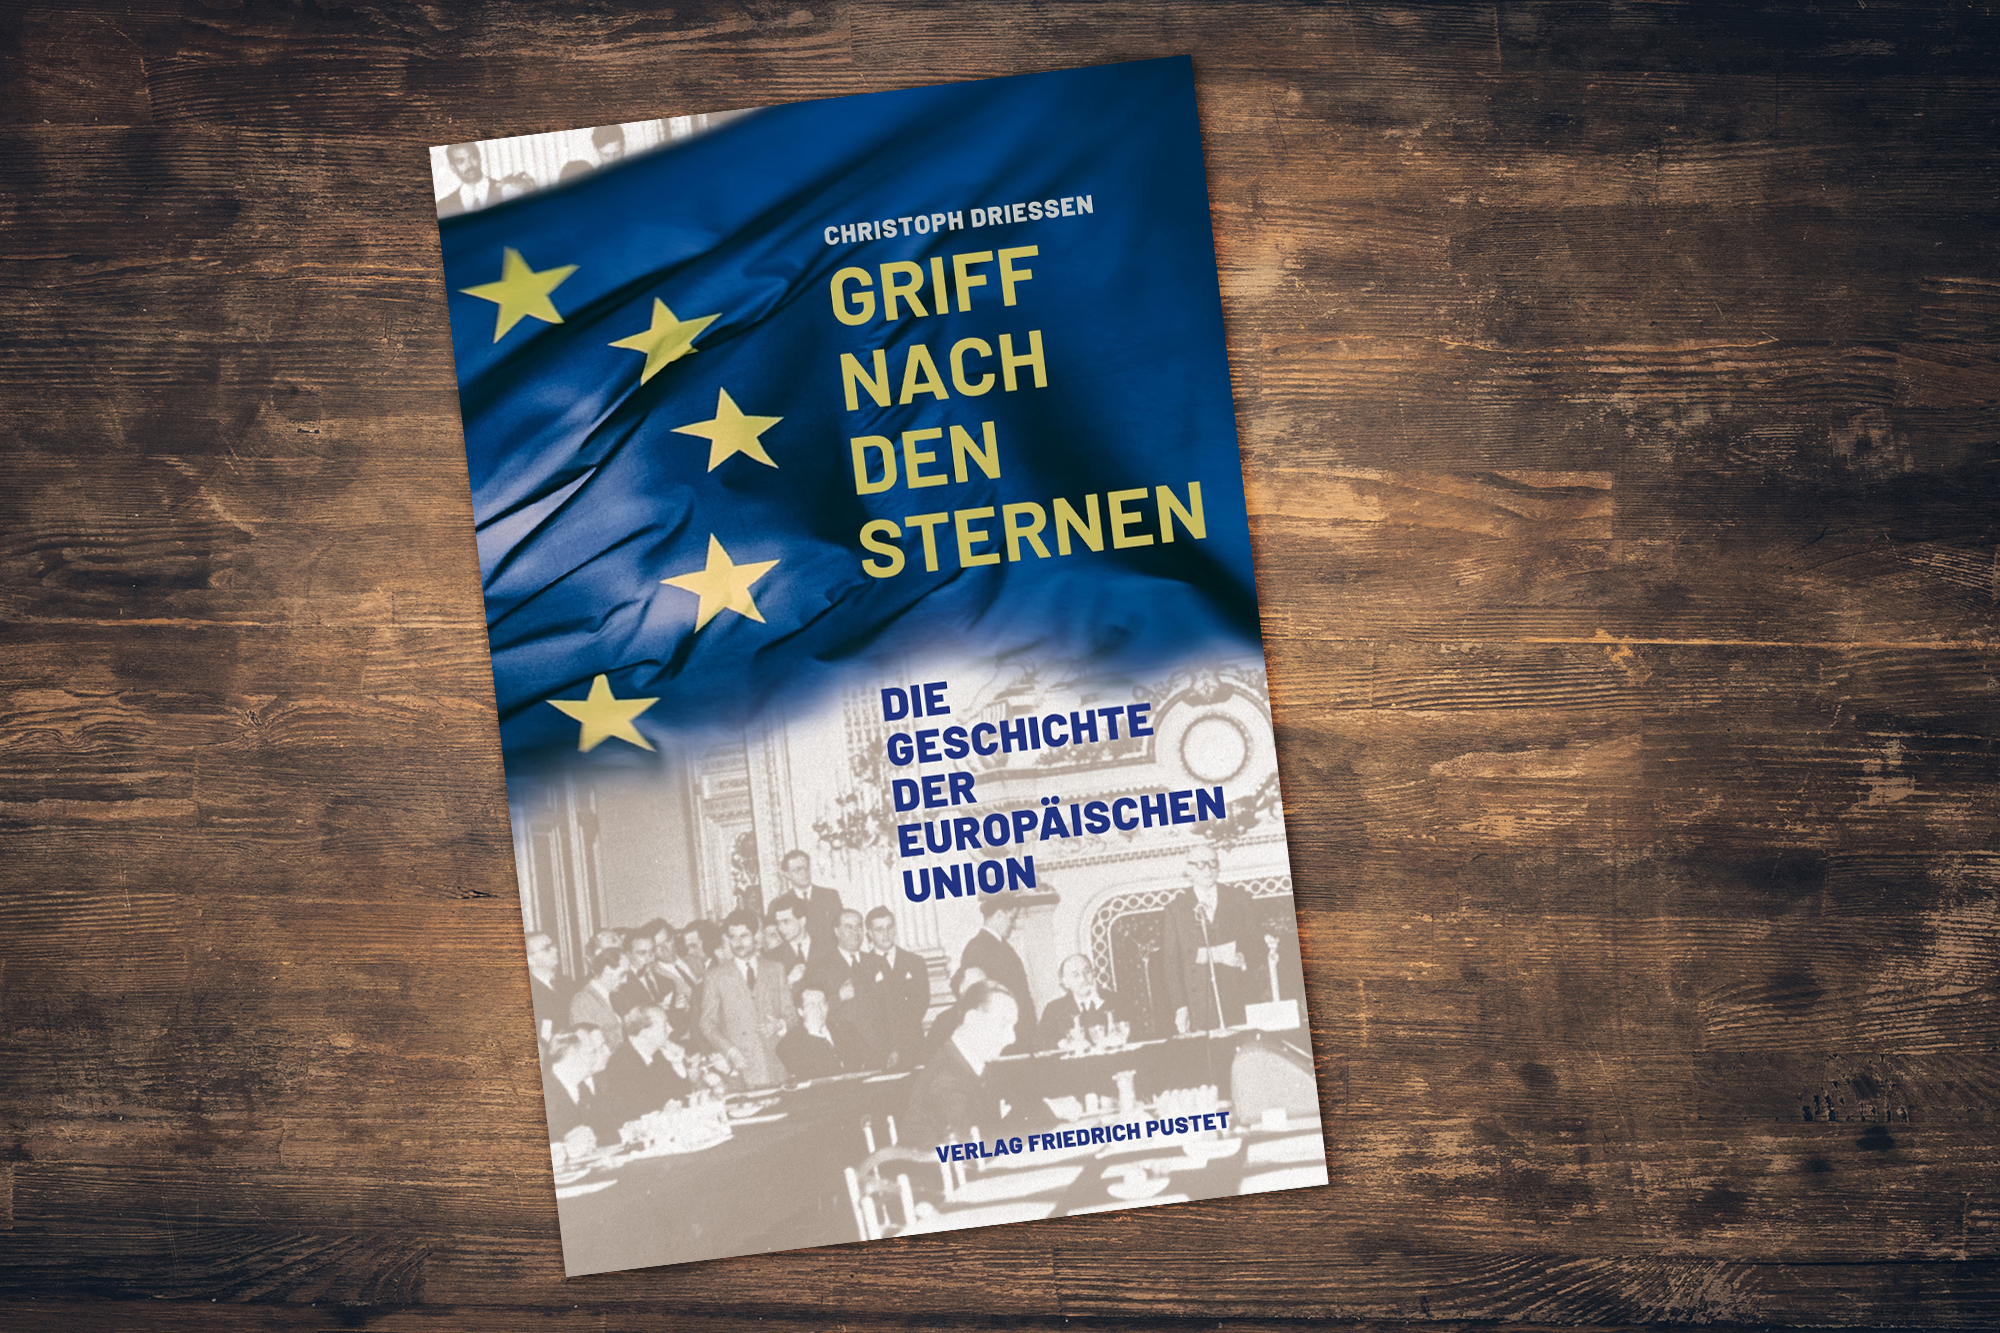 Christoph Driessen, "Griff nach den Sternen. Die Geschichte der Europäischen Union", aus dem Verlag Friedrich Pustet